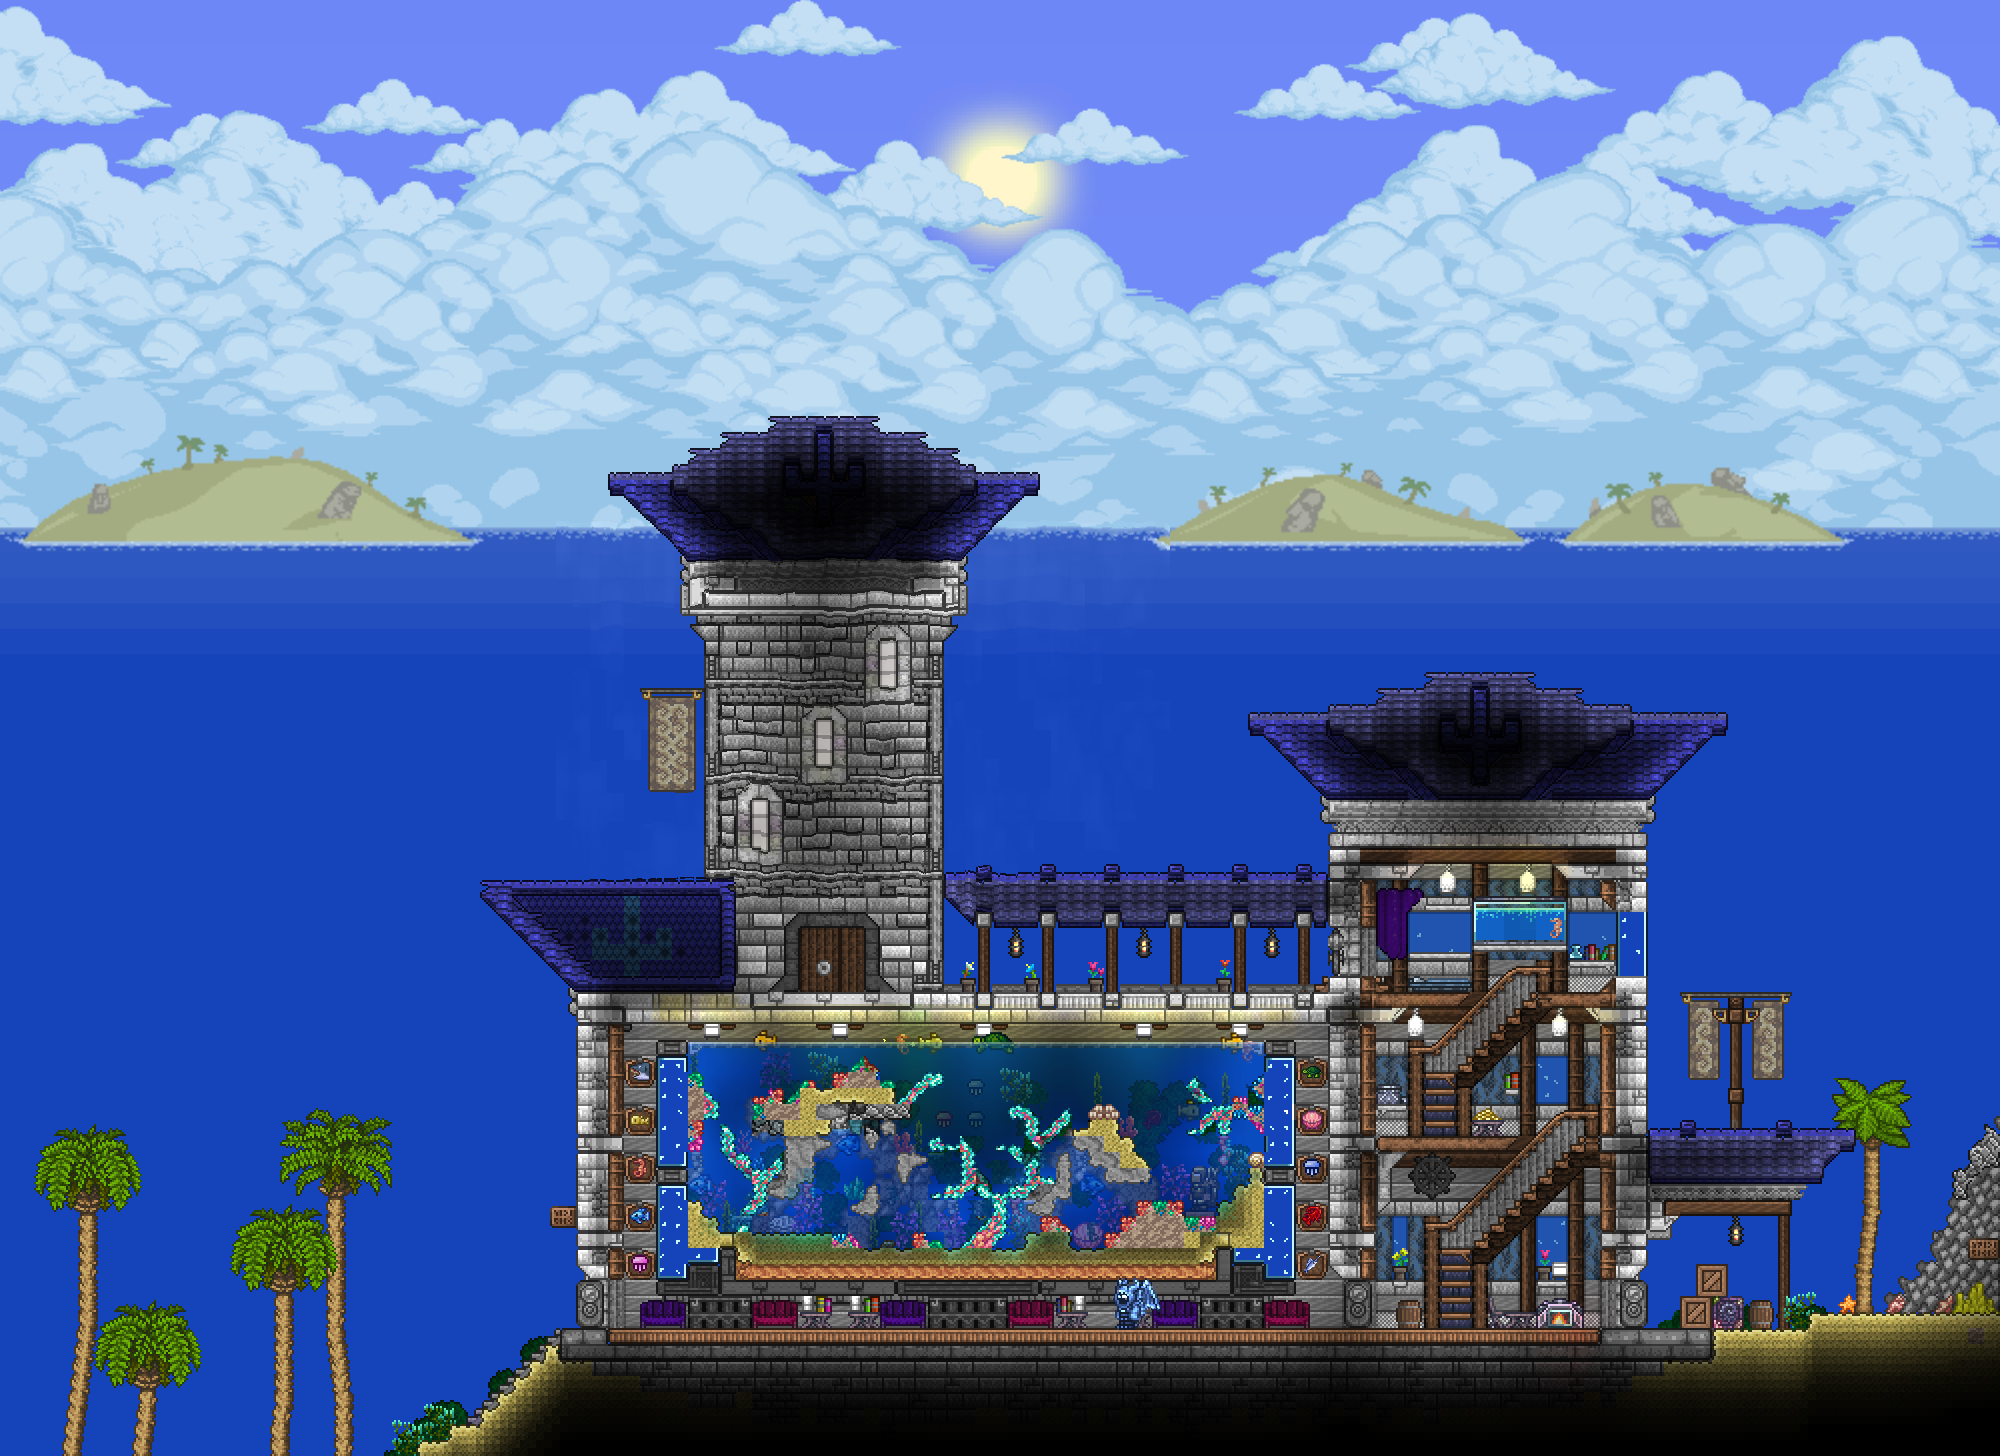 A minute Aquarium I constructed